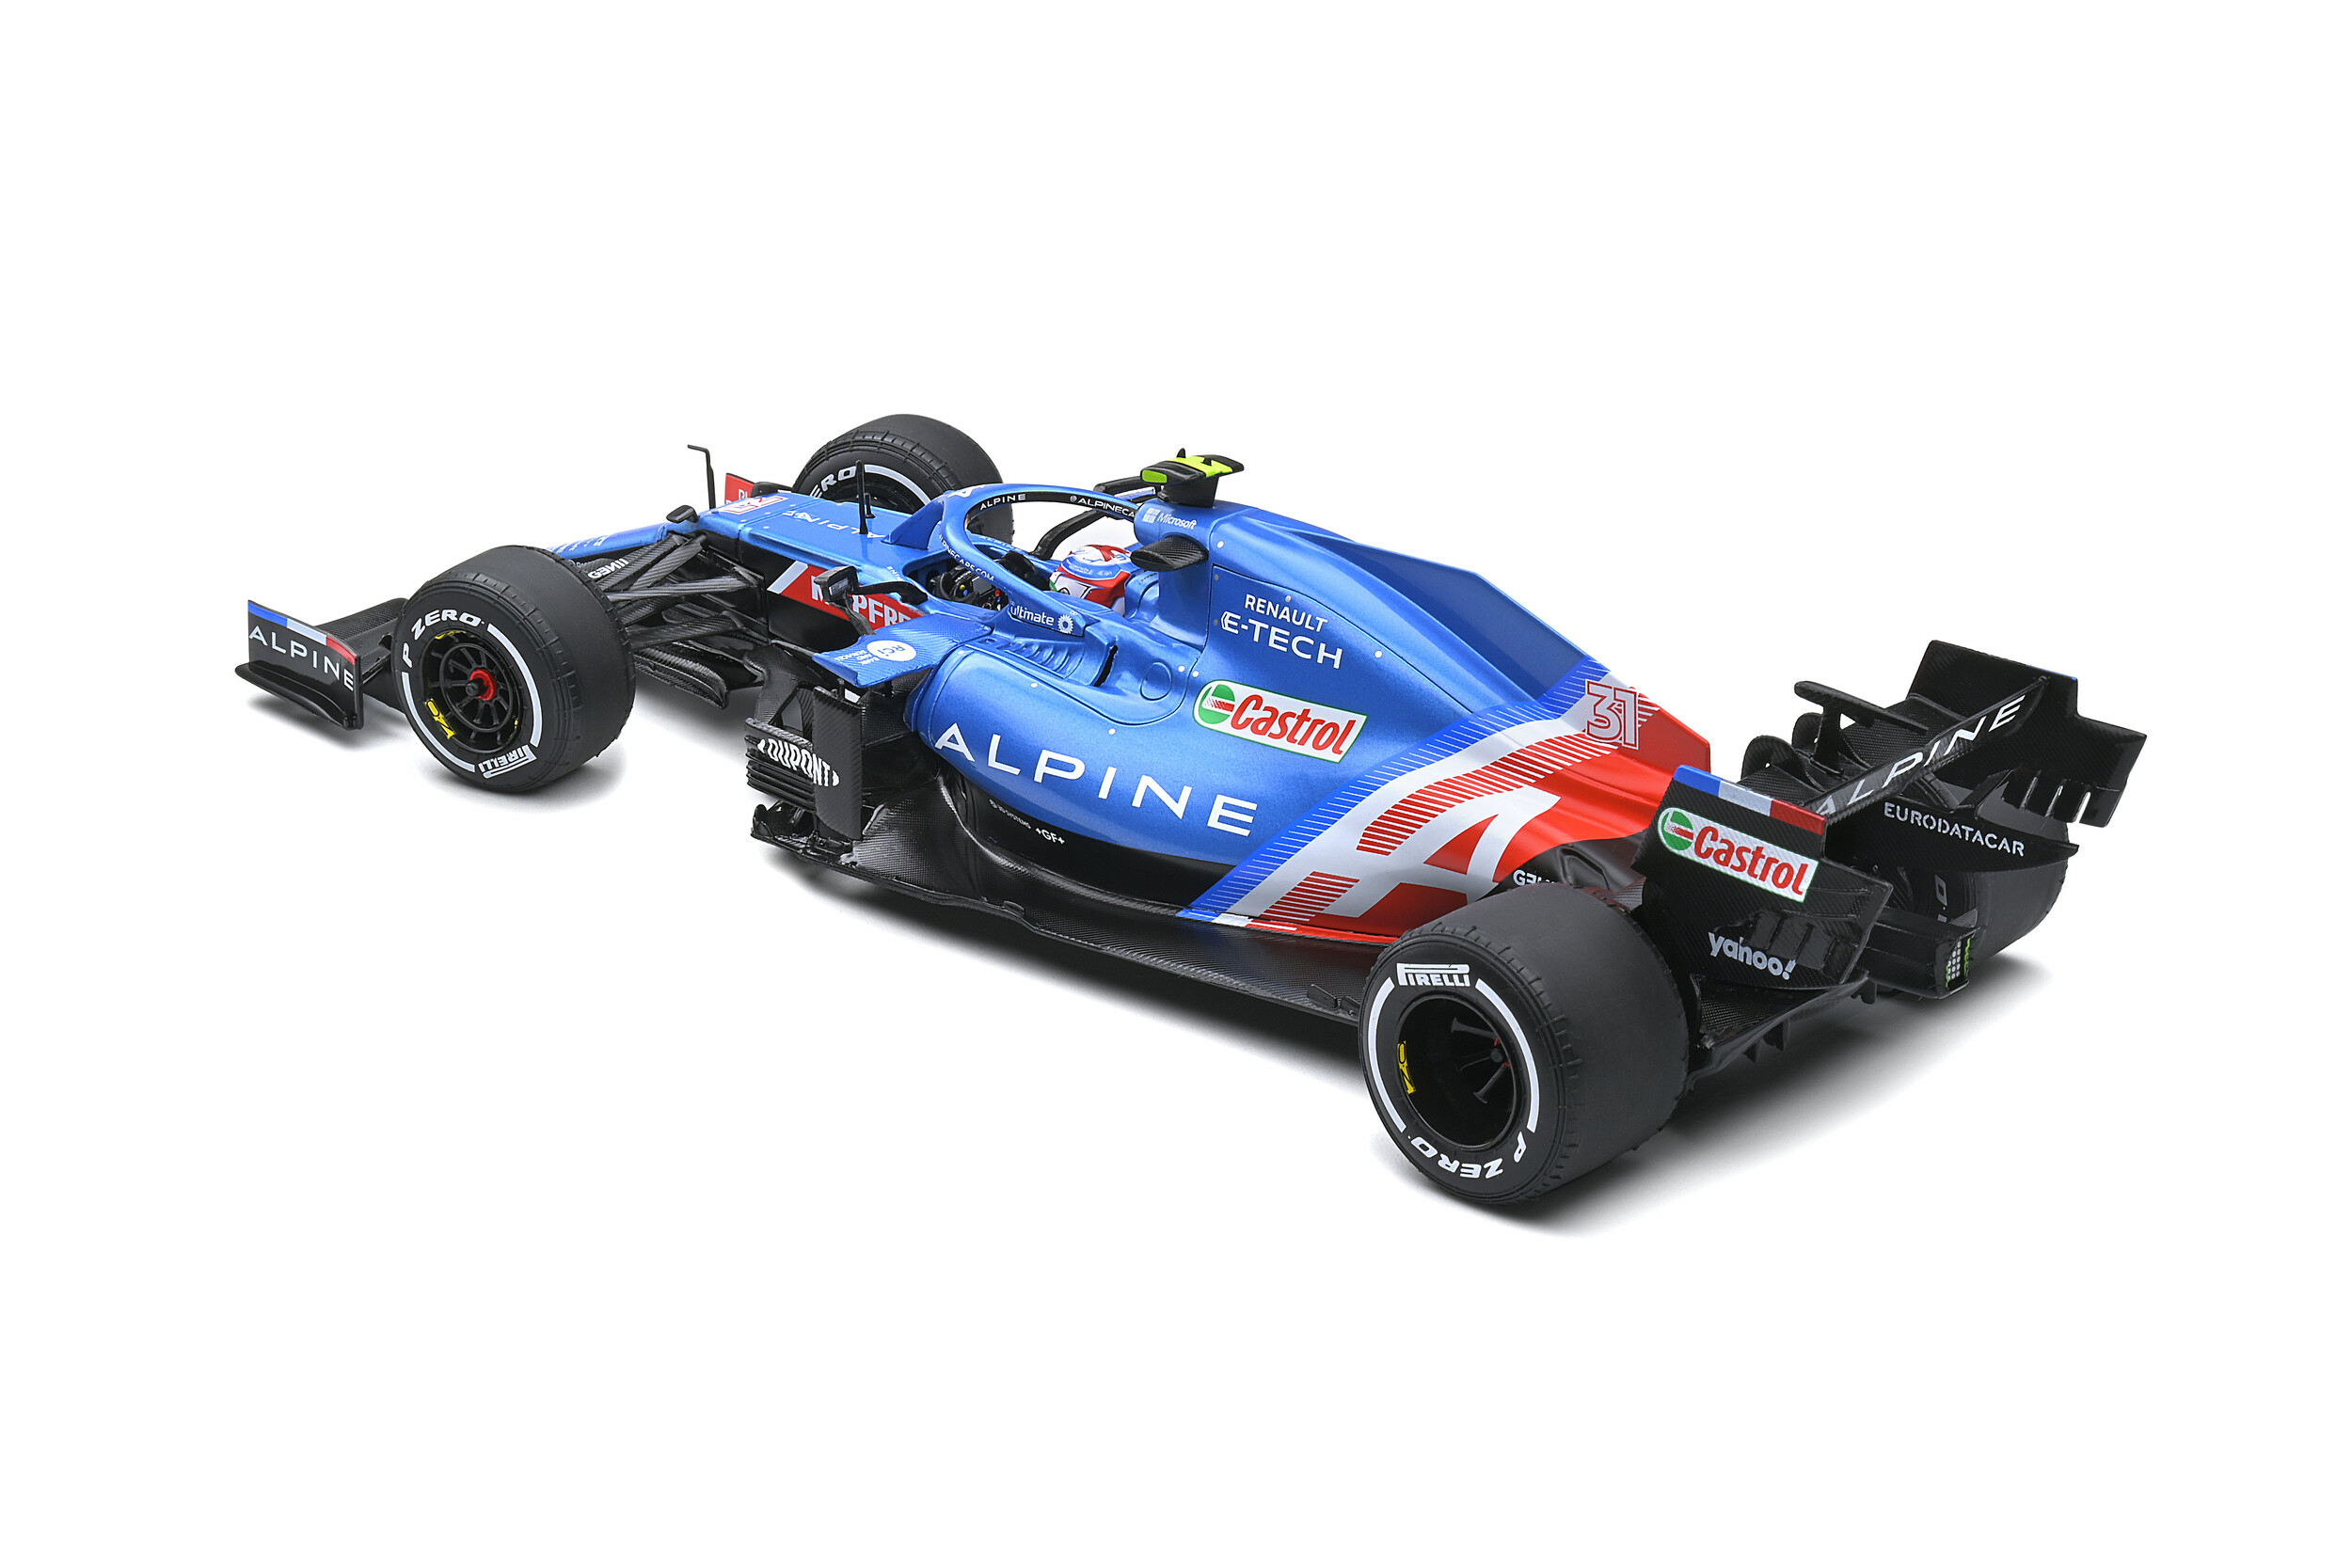 Formule 1 Esteban Ocon - Grand Prix Hongrie 2021 - Solido vue profil arrière